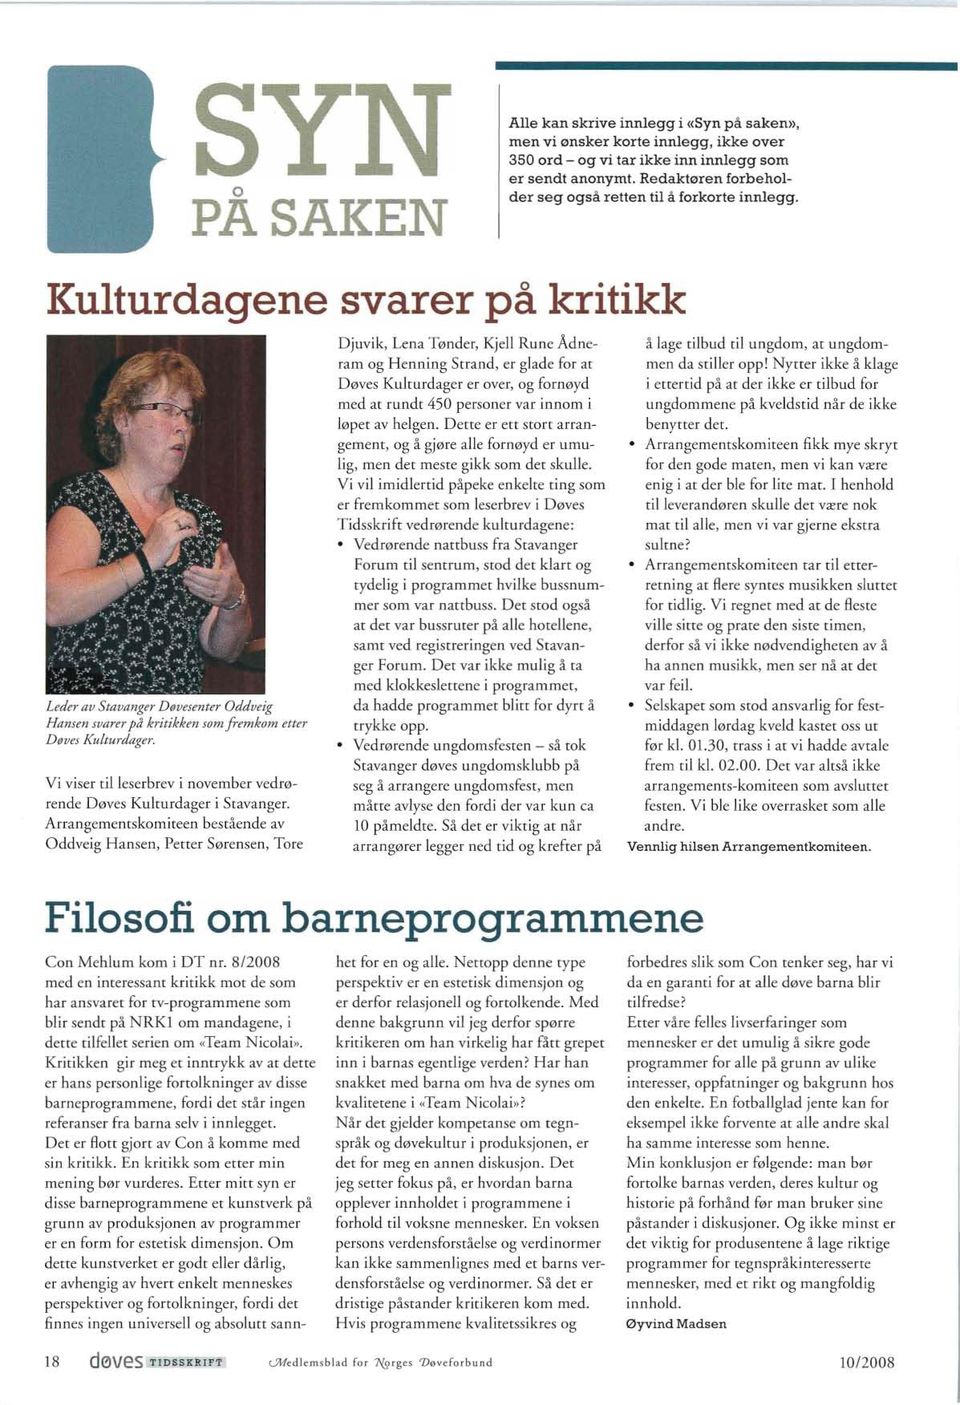 Vi viser til leserbrev i november vedrørende Døves Kulturdager i Stavanger.